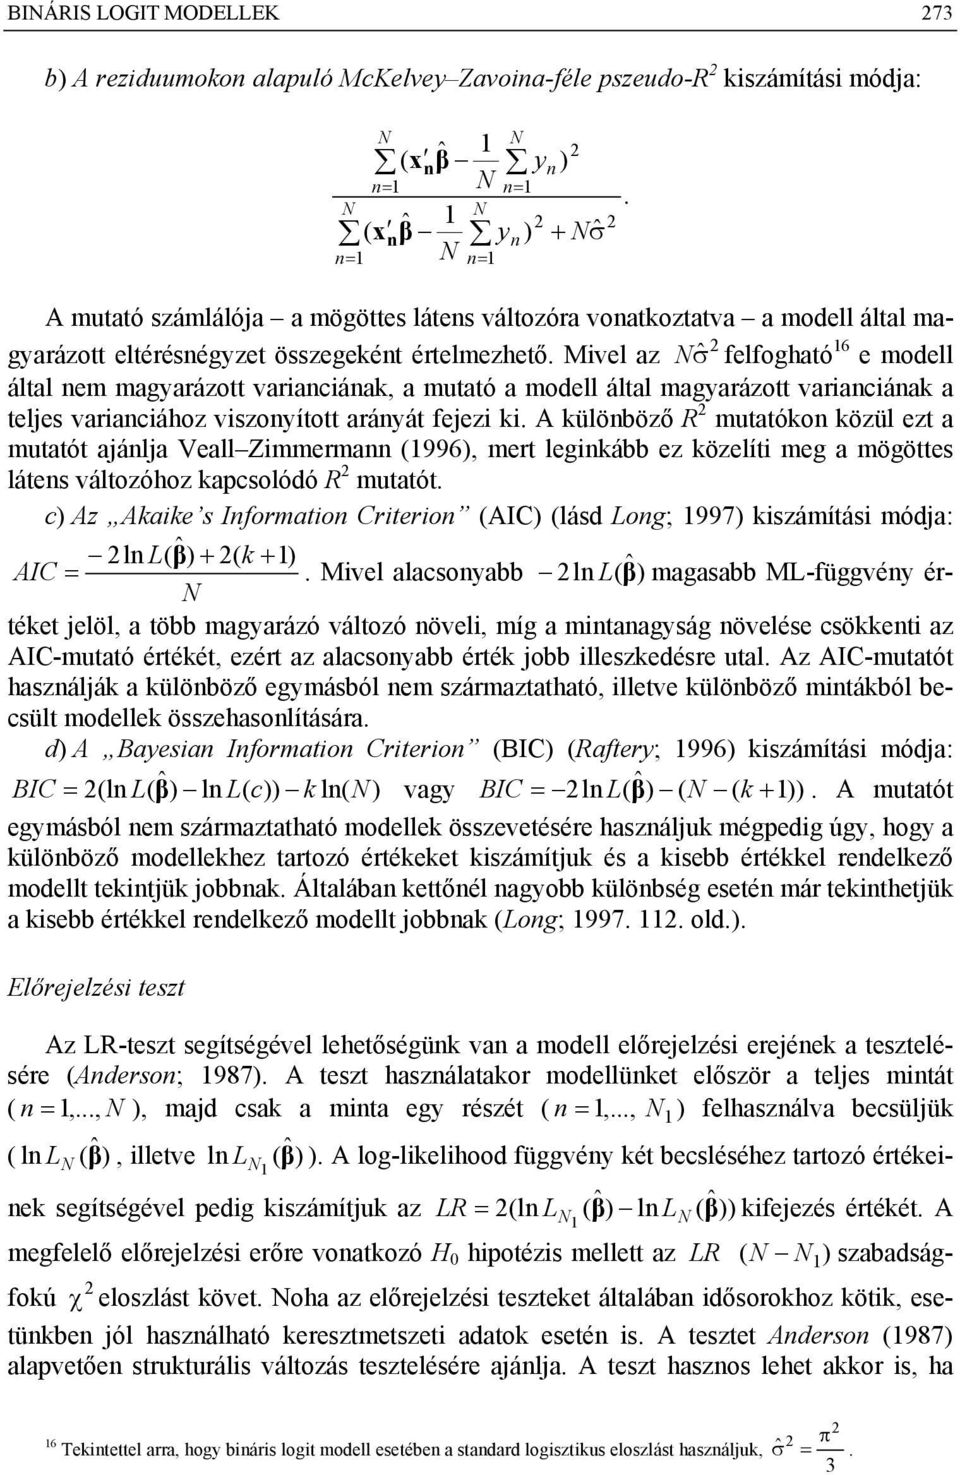 Mivl az N ˆσ flfogható 6 modll által m magyarázott variaciáak, a mutató a modll által magyarázott variaciáak a tljs variaciához viszoyított aráyát fjzi ki.